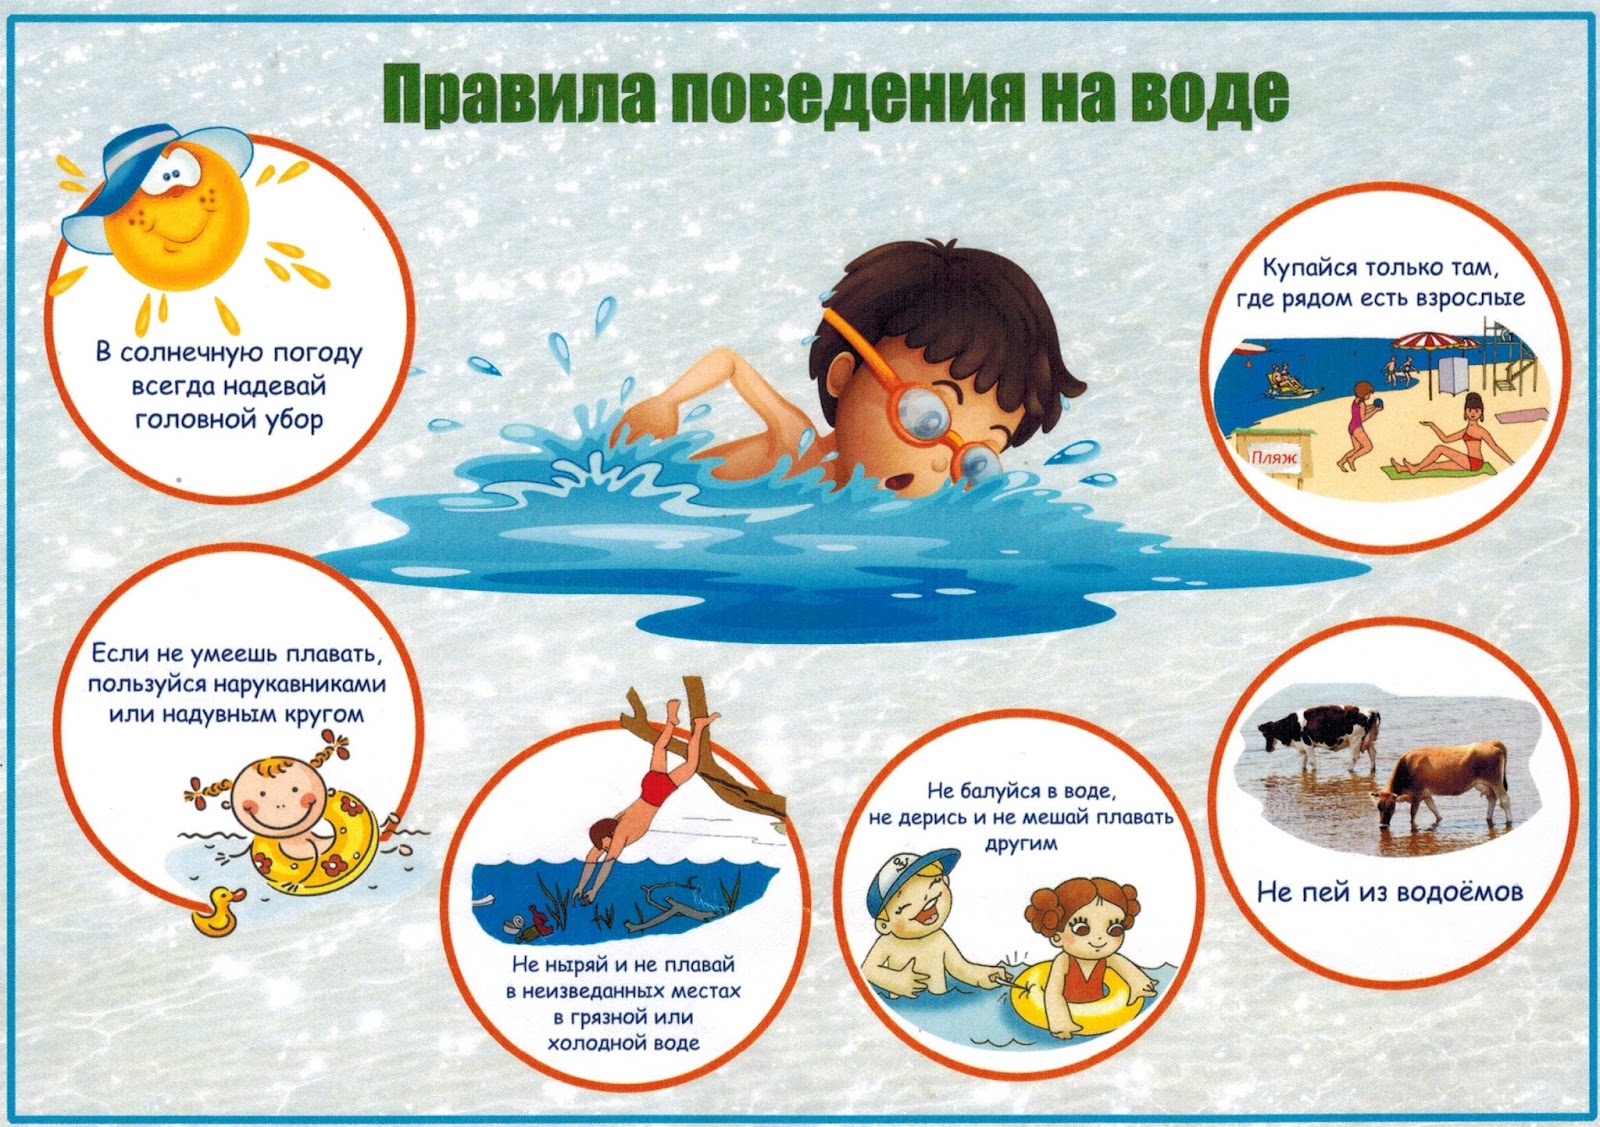 Правила поведения на воде для детей